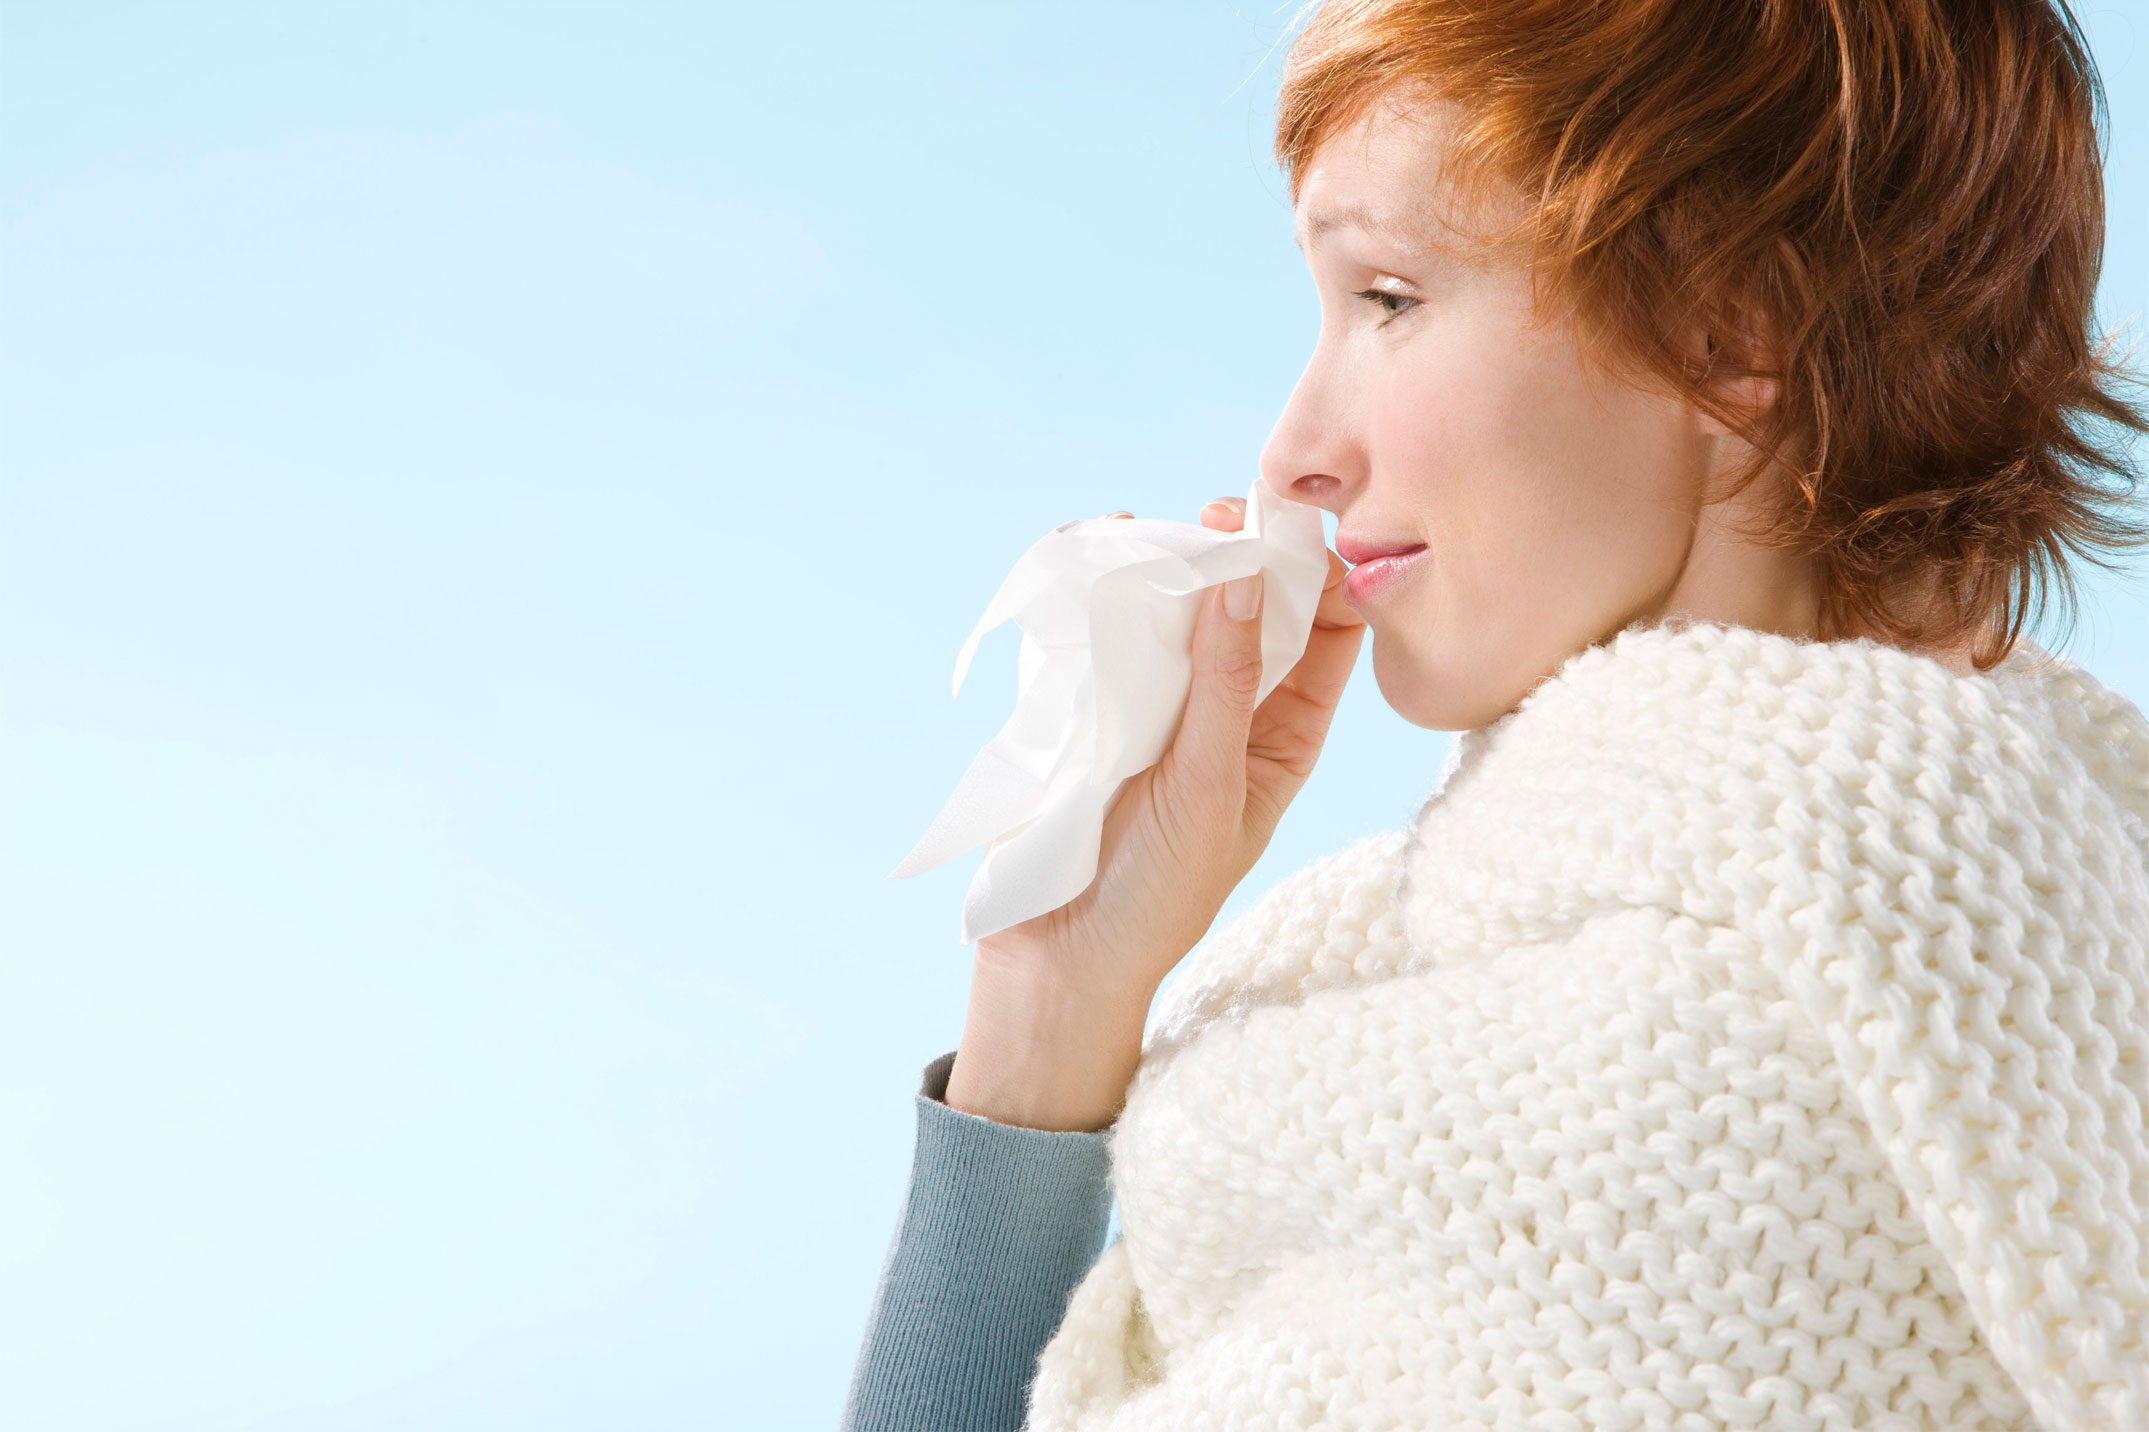 Allergia alla polvere? Arrivano nuove soluzioni